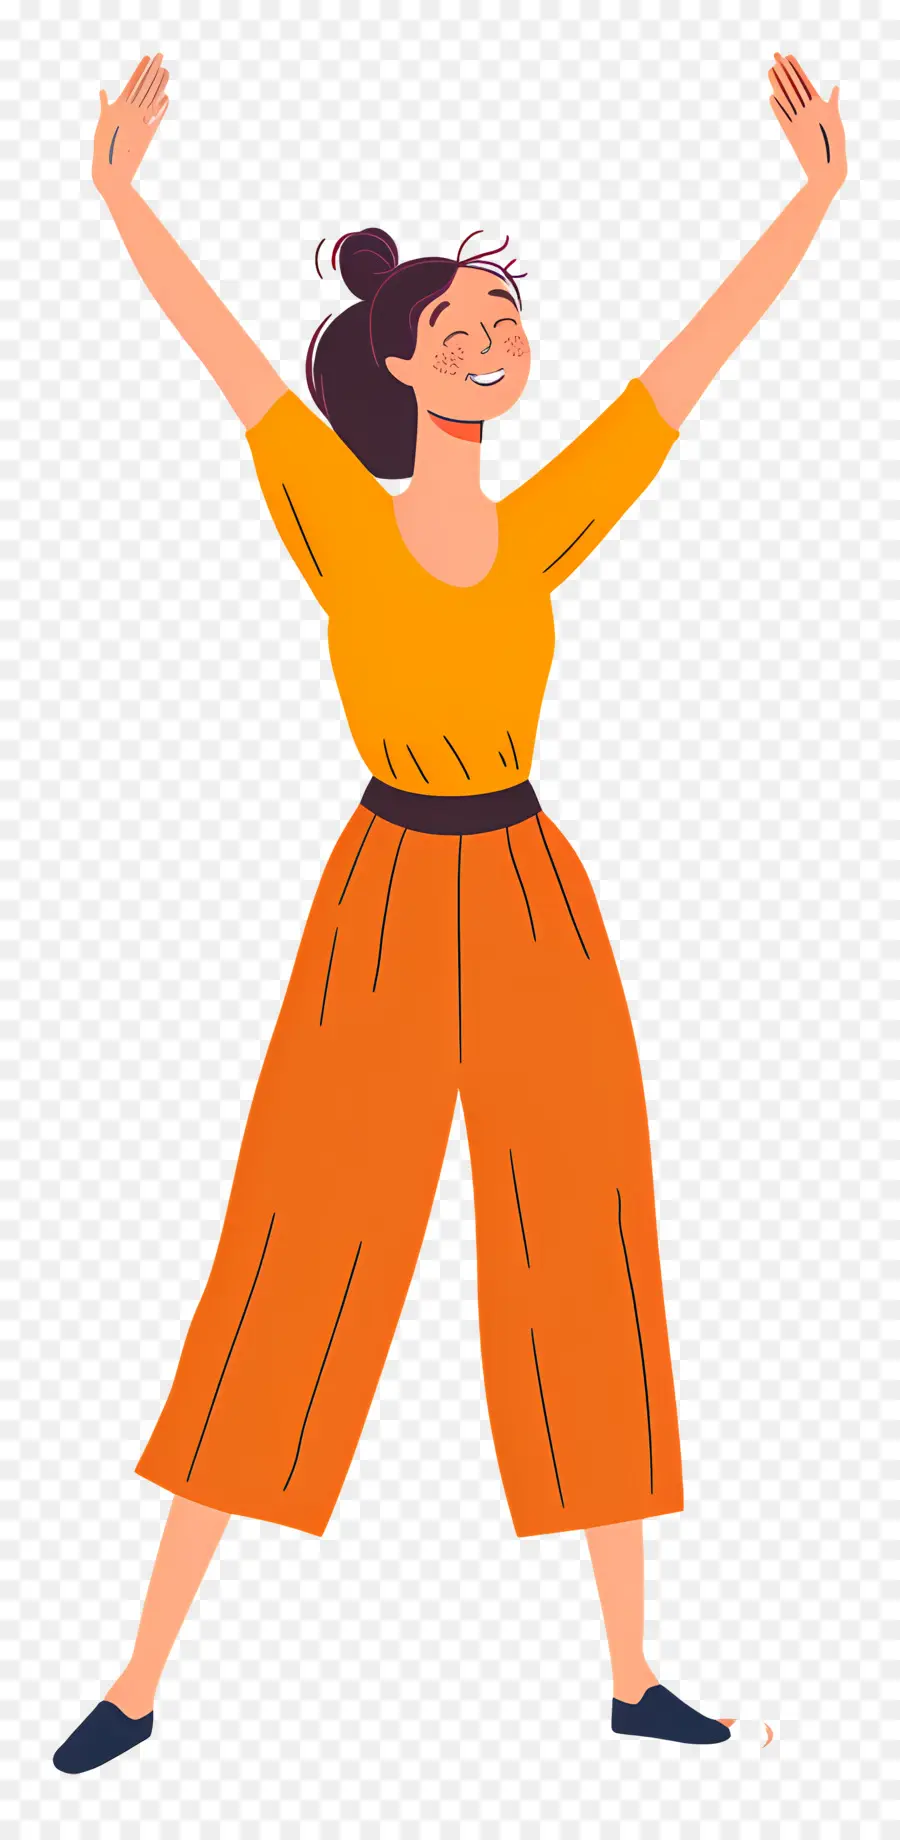 Người phụ nữ hoạt hình Orange Jumpsuit tay giơ chân lên - Người phụ nữ hoạt hình mặc áo liền quần màu cam với cánh tay giơ lên